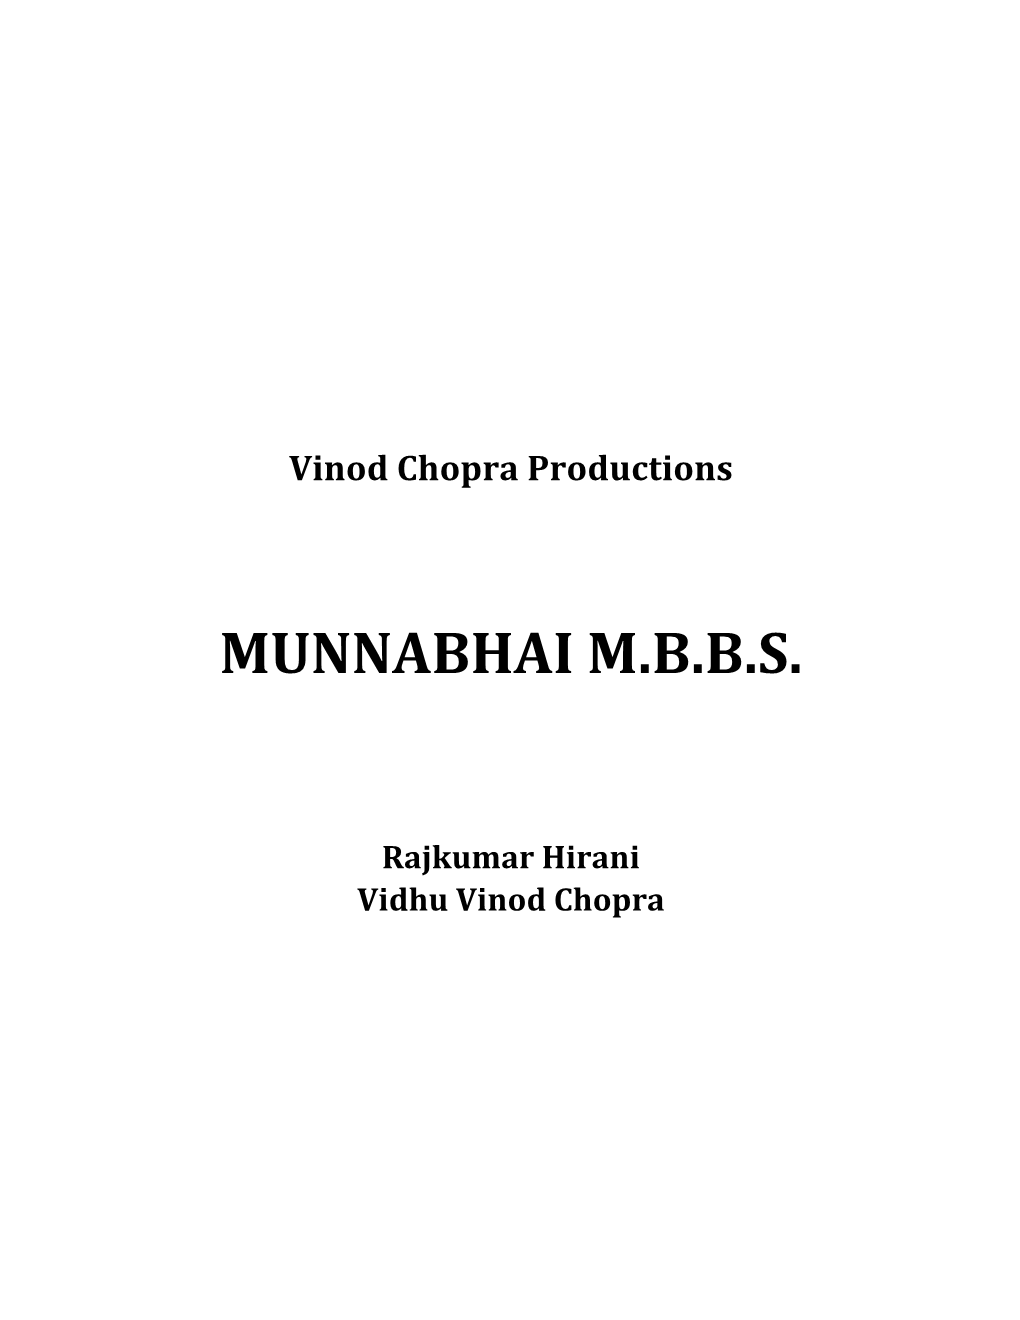 Munnabhai M.B.B.S